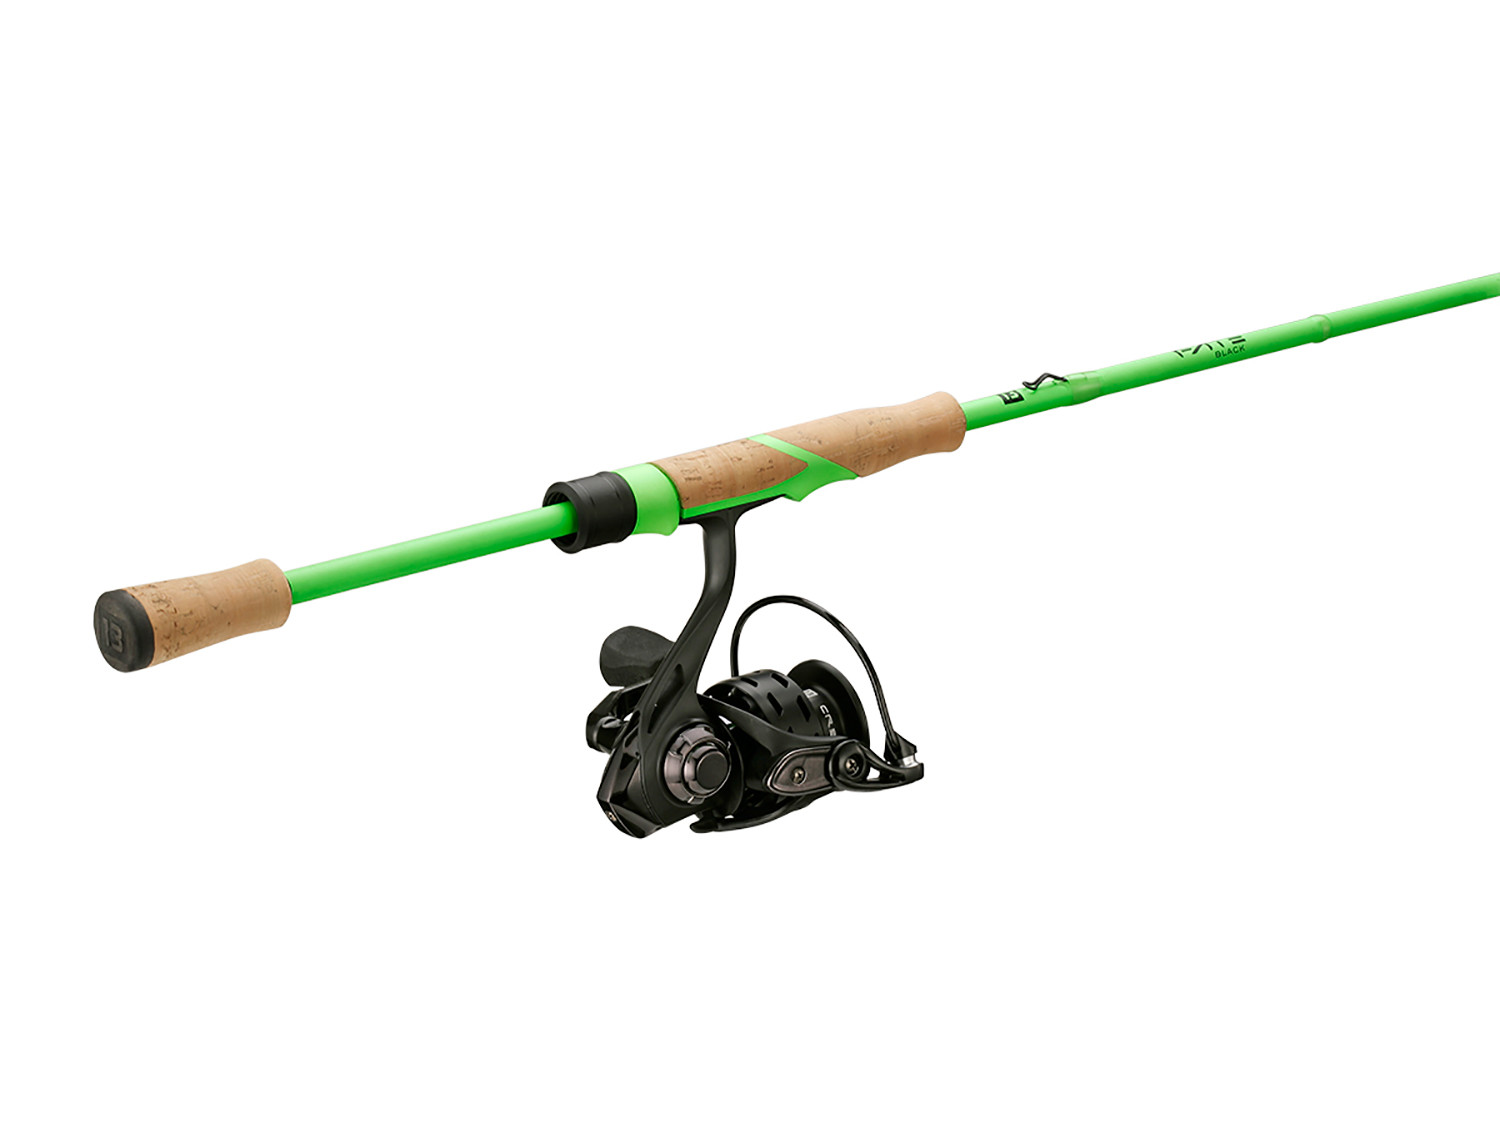 ONE3 Sonicor Ice Fishing Rod and Reel Combo